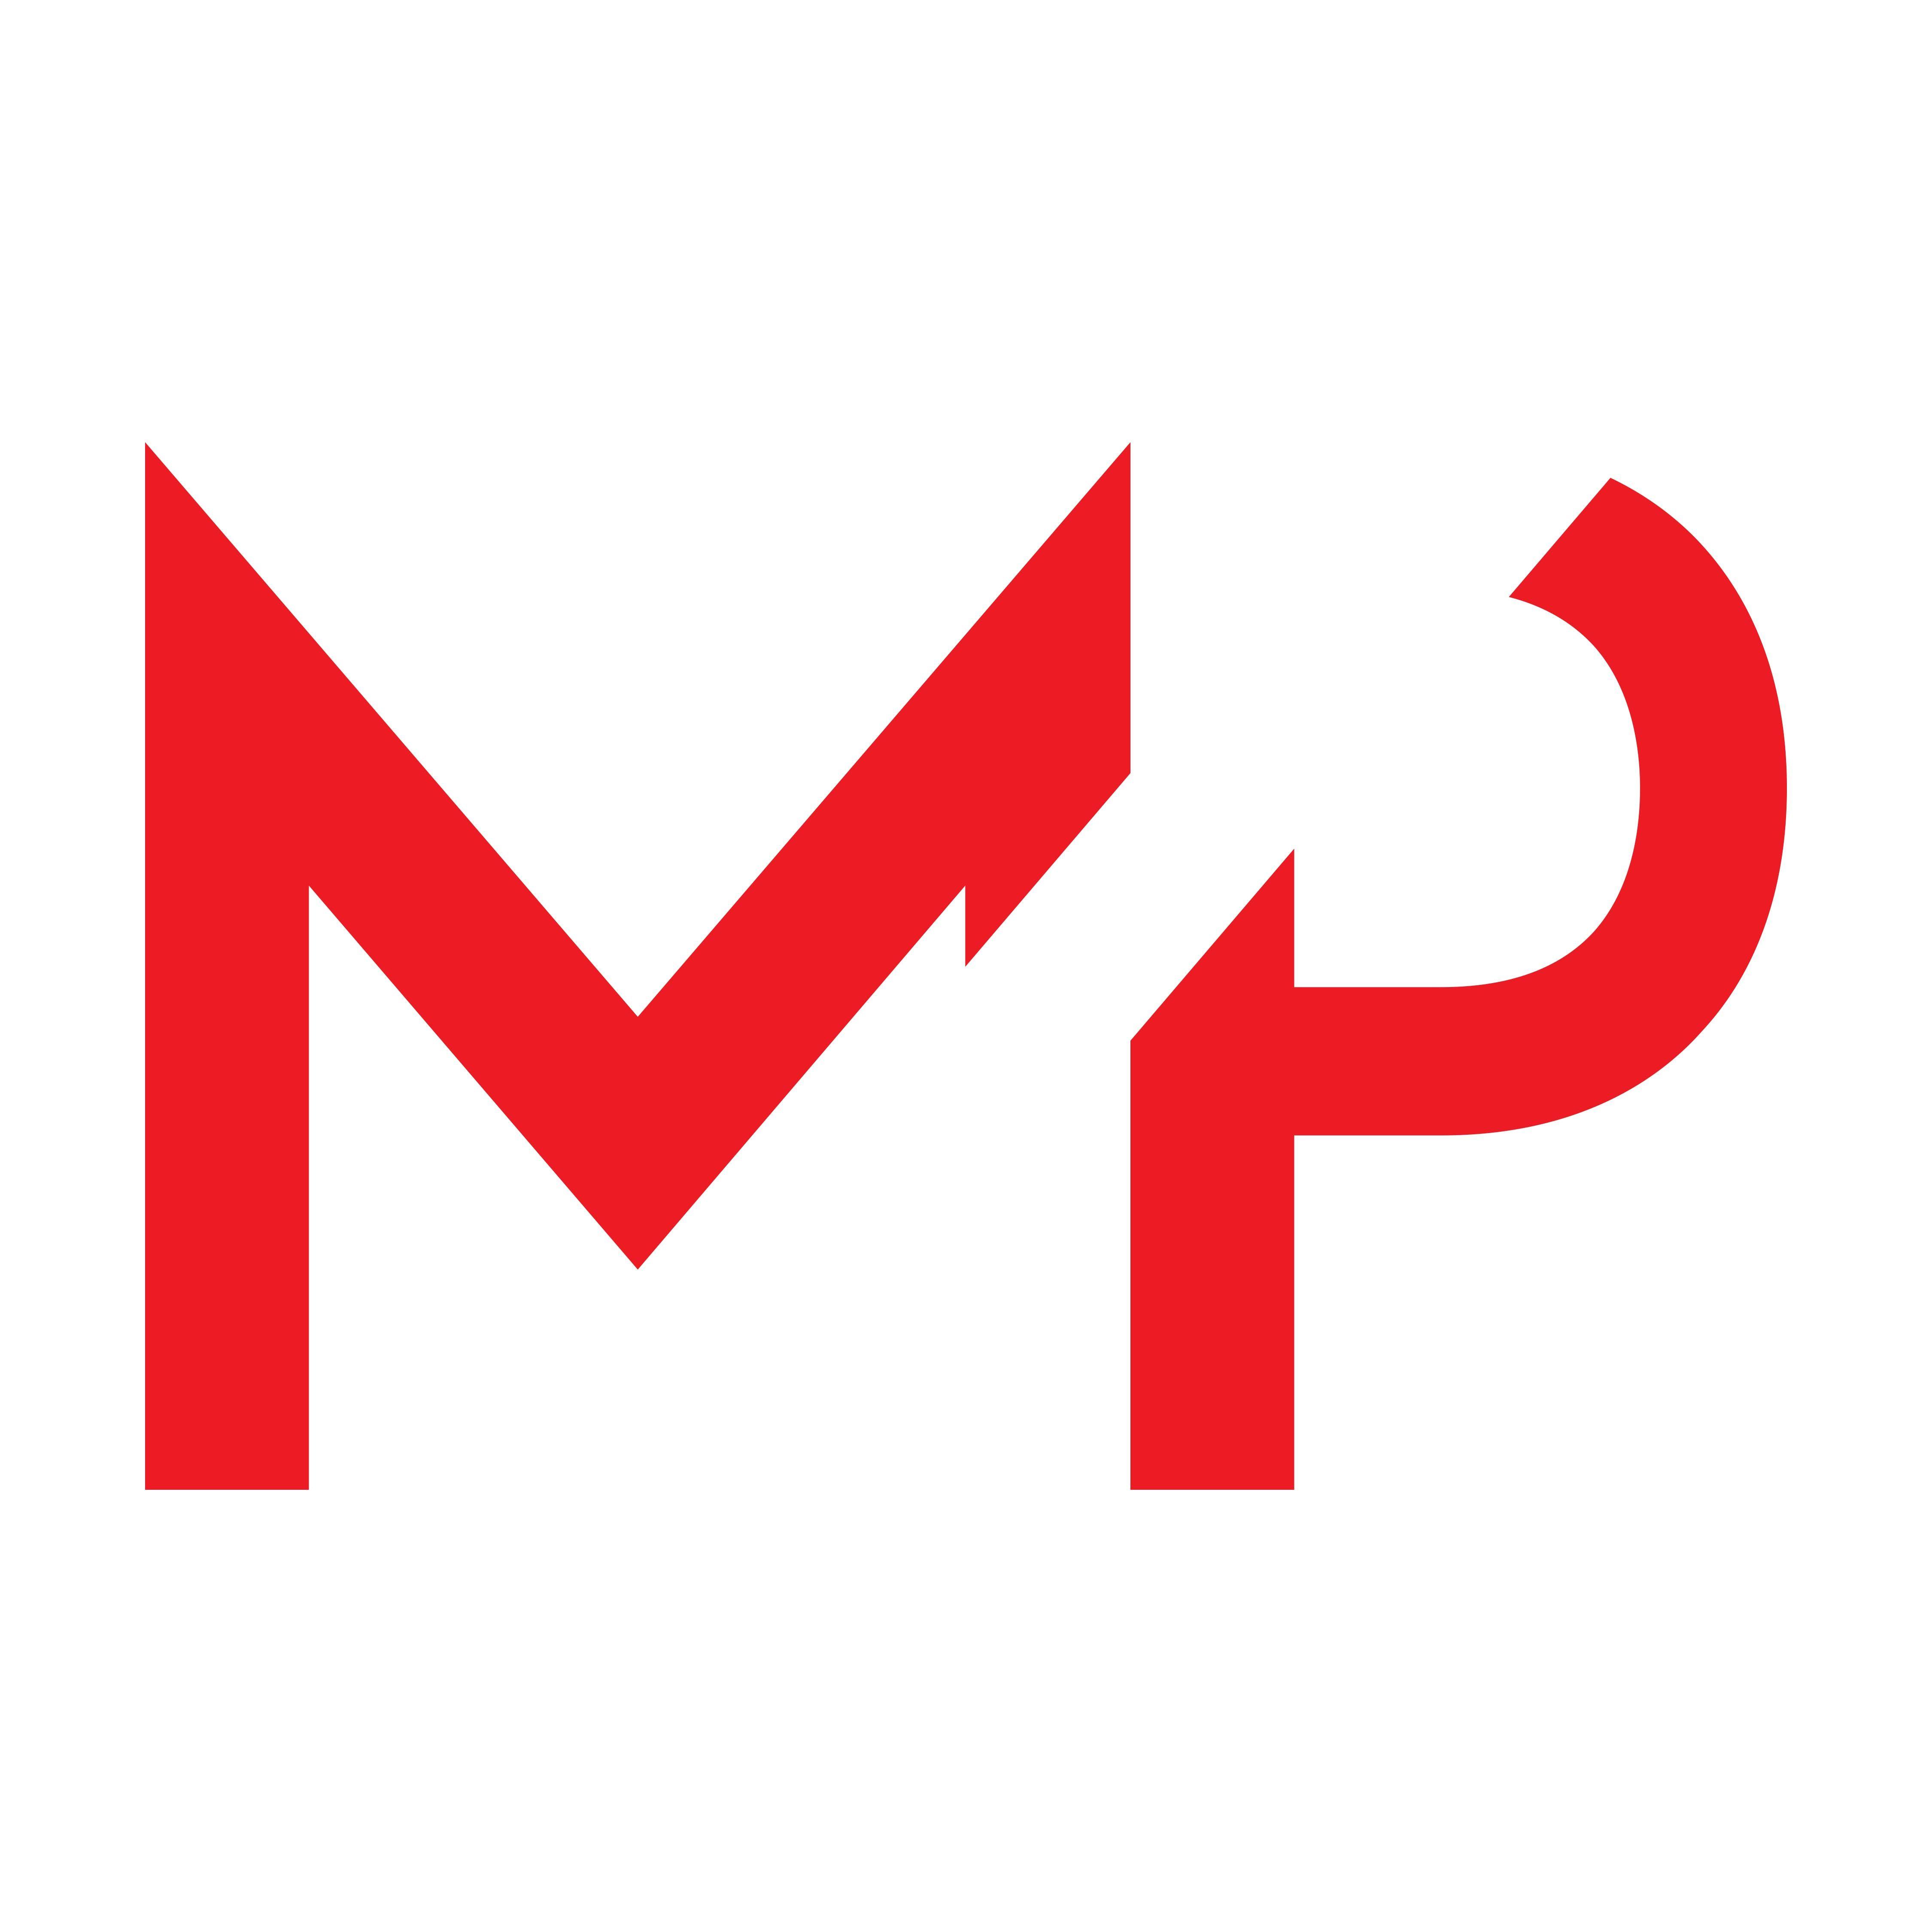 MP Logo - MP- Logo | Mandy Pacheco Photography | Logos, Logo design, Logo ...